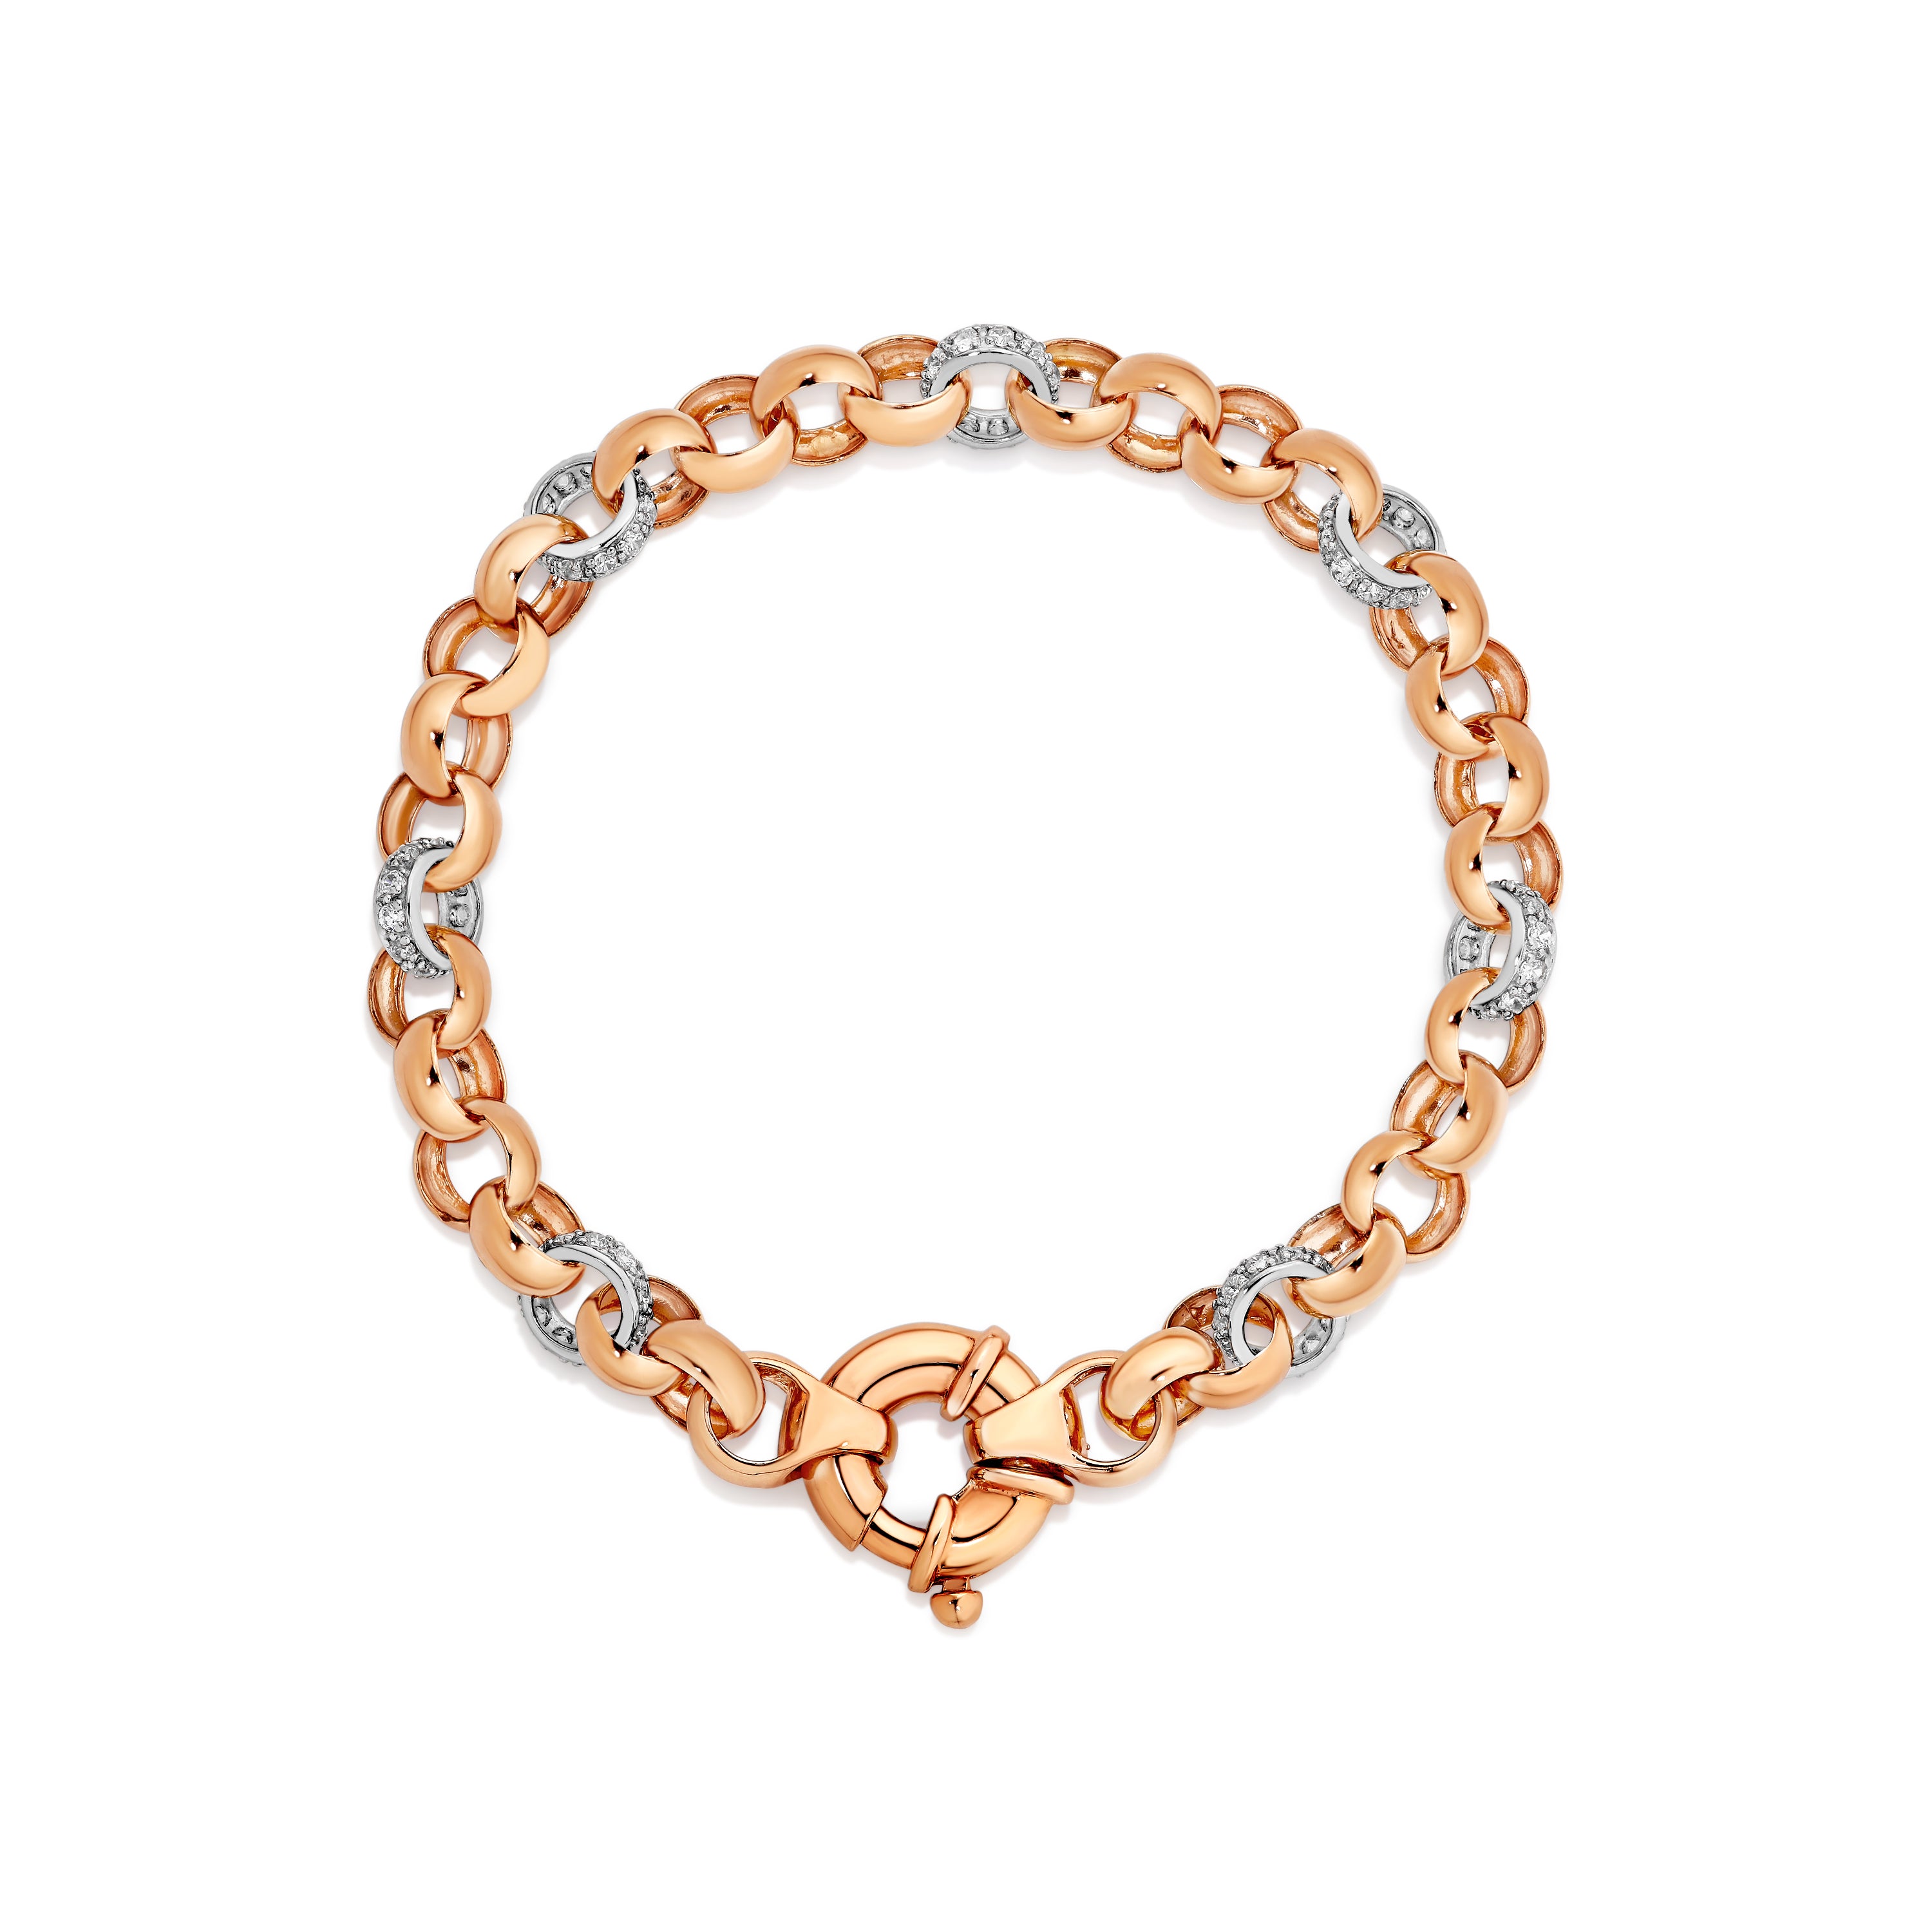 9ct rose gold solid stone set bracelet